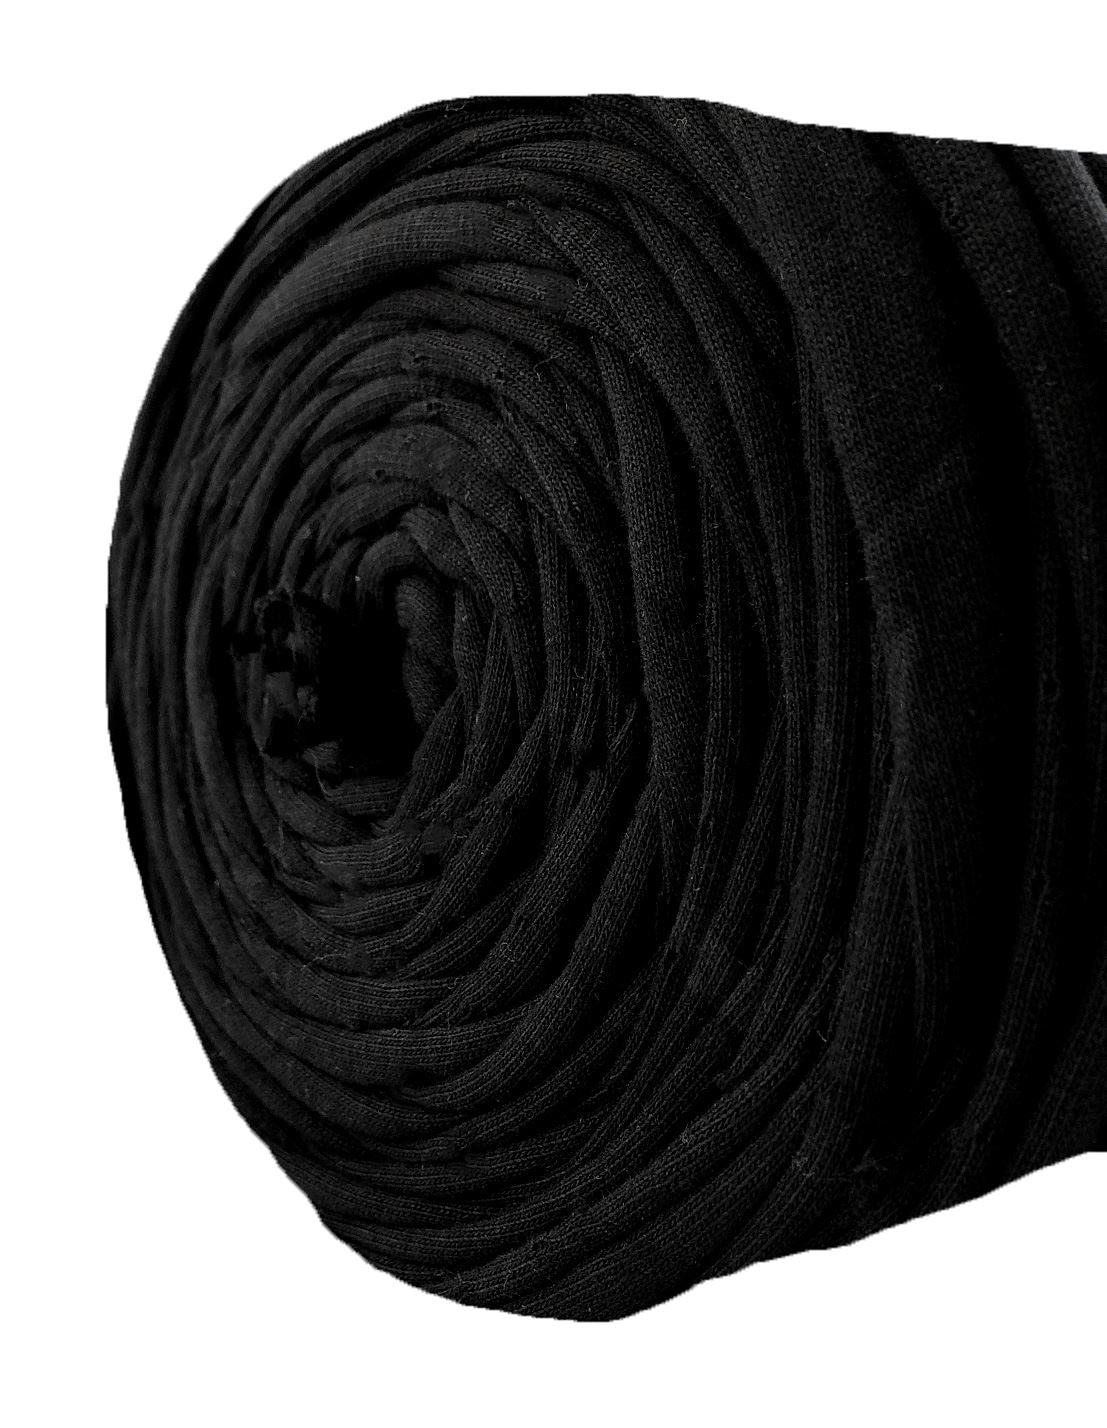 Black t-shirt yarn by Rescue Yarn (100-120m)